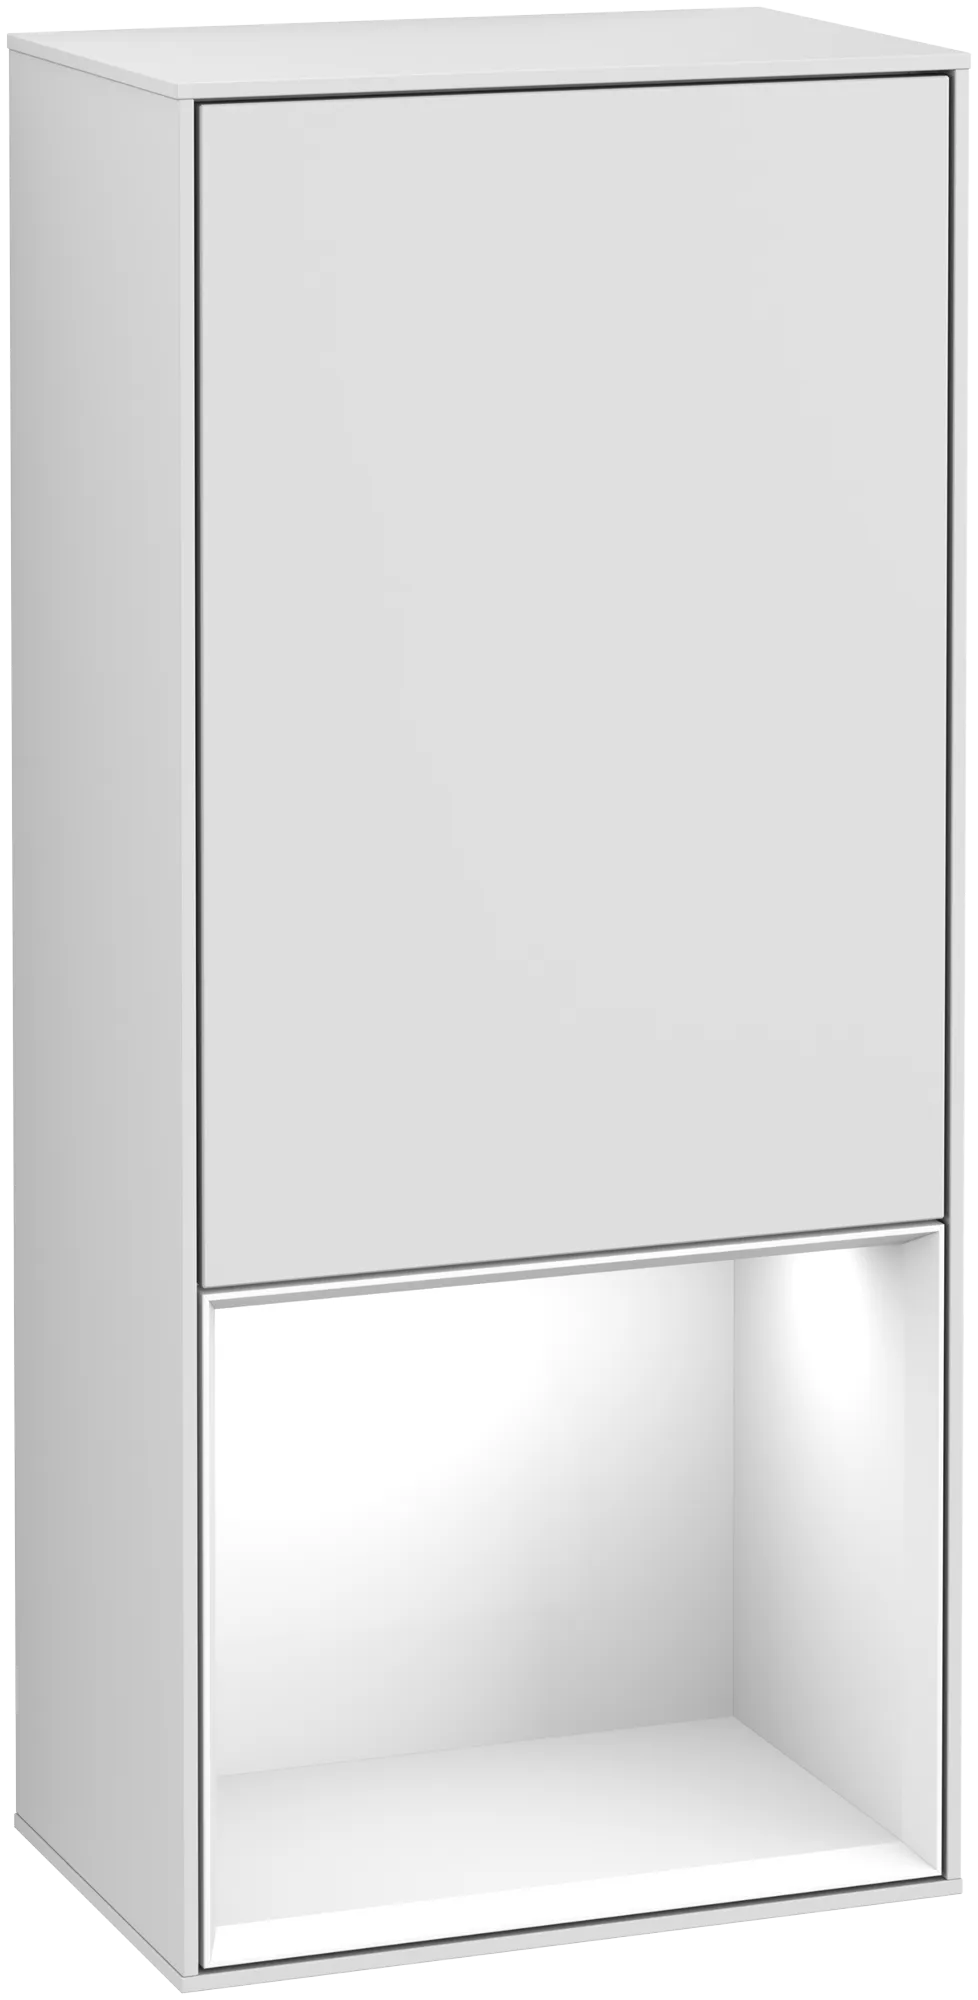 Bild von VILLEROY BOCH Finion Seitenschrank, mit Beleuchtung, 1 Tür, 418 x 936 x 270 mm, White Matt Lacquer / Glossy White Lacquer #G550GFMT